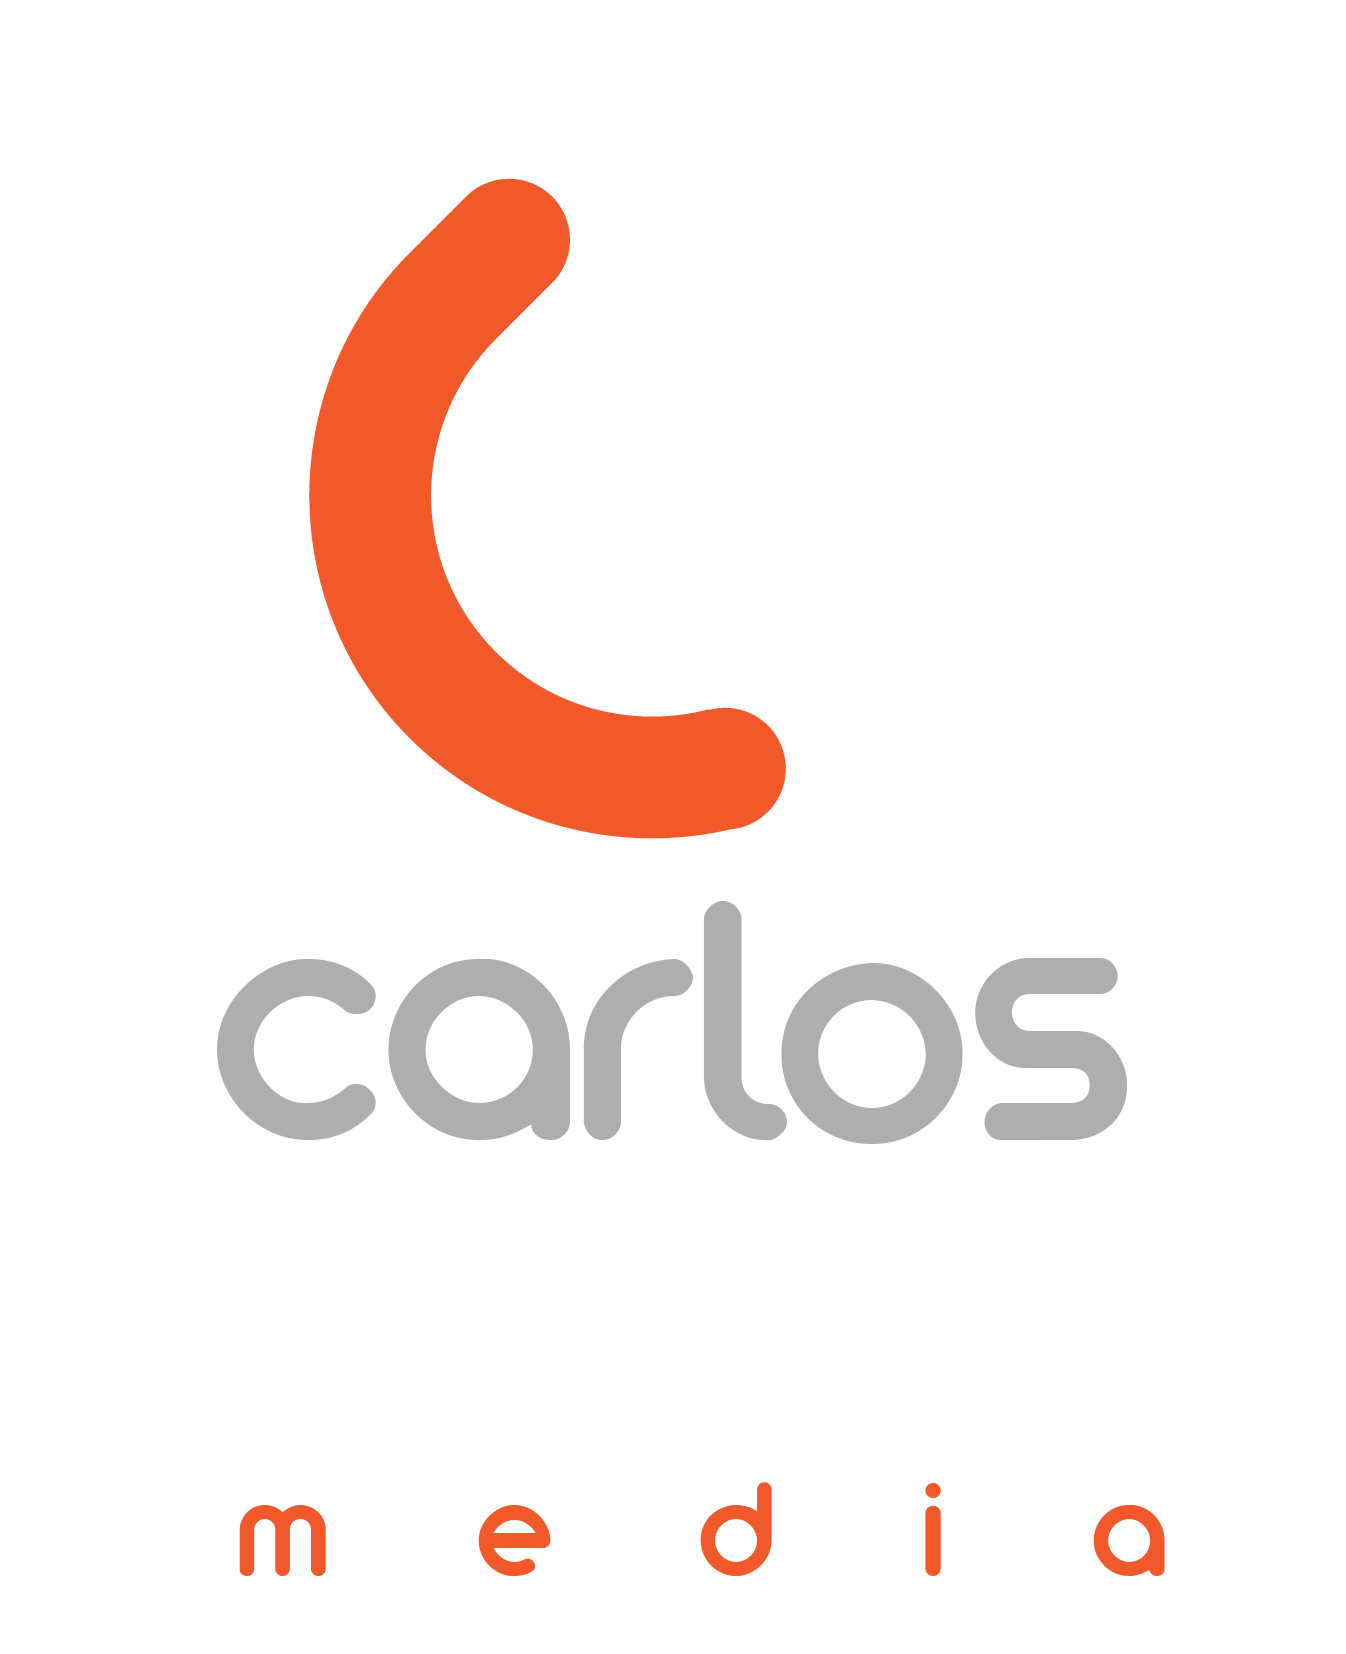 CARLOS BOLIVAR | MEDIA